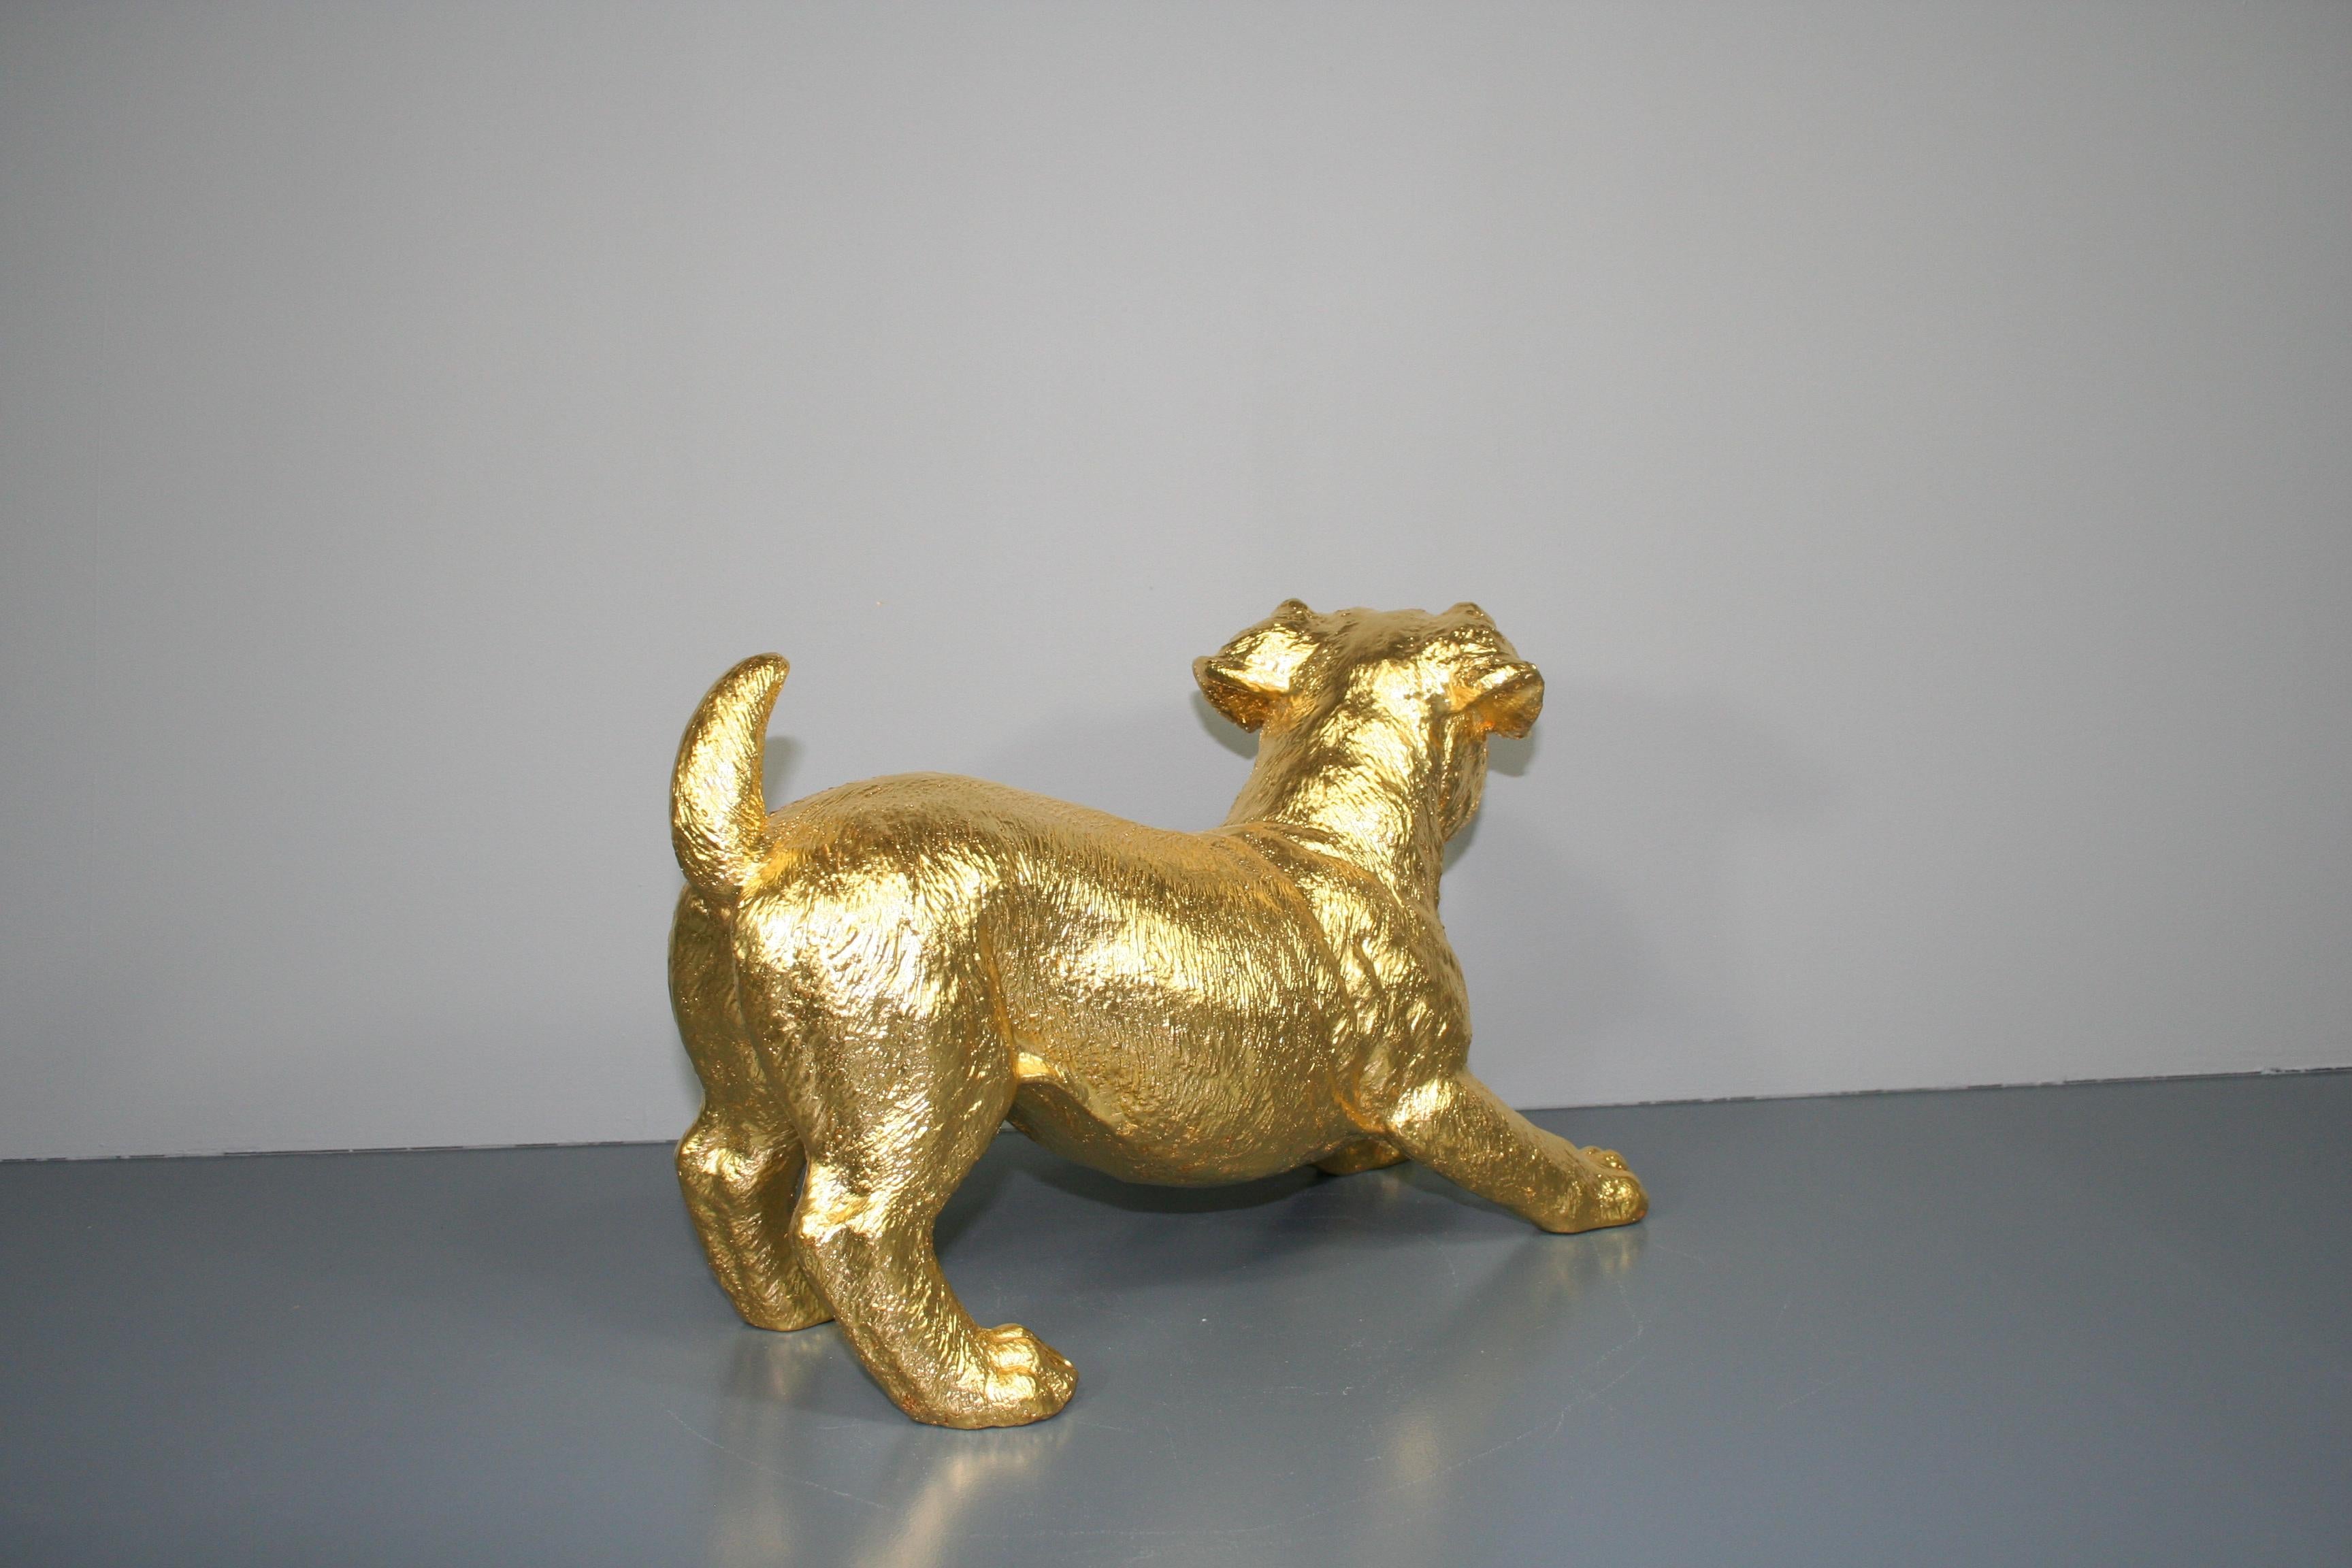 Couple de chiens traditionnels dorés à la feuille d'or 24k. Ceux-ci peuvent être placés aussi bien à l'extérieur qu'à l'intérieur. Les dimensions sont d'environ 23 x 15 x 37 cm par figure.